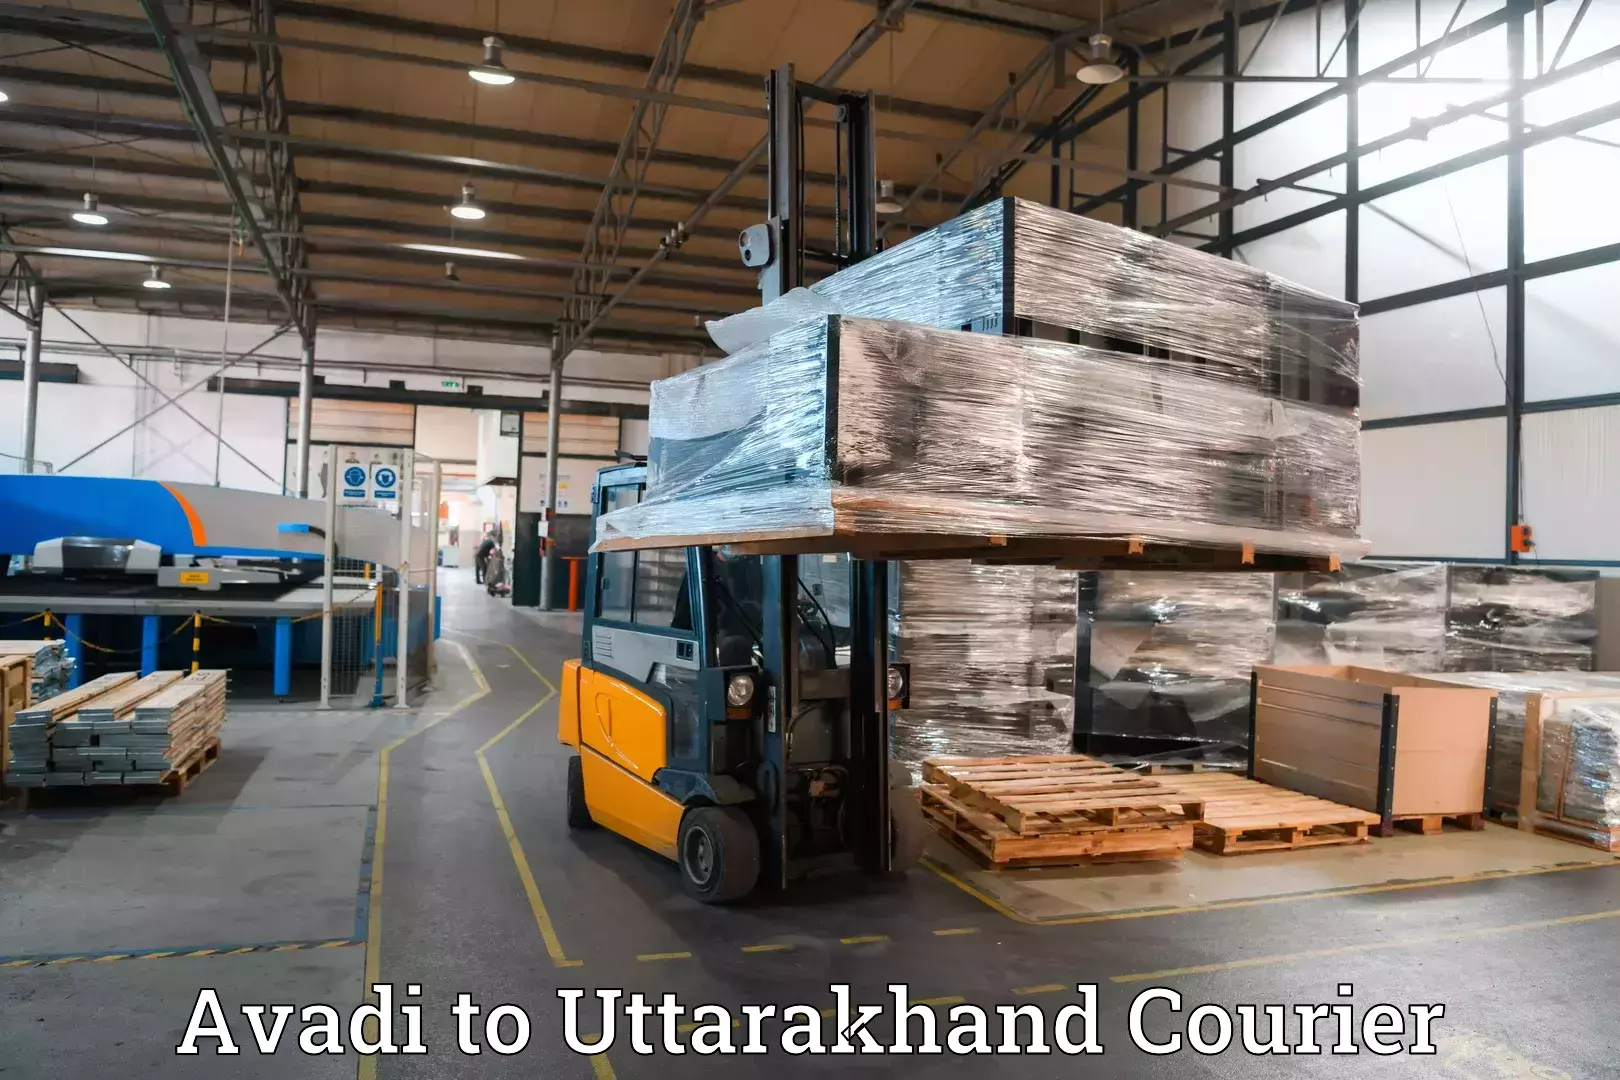 Luggage delivery optimization Avadi to Uttarakhand